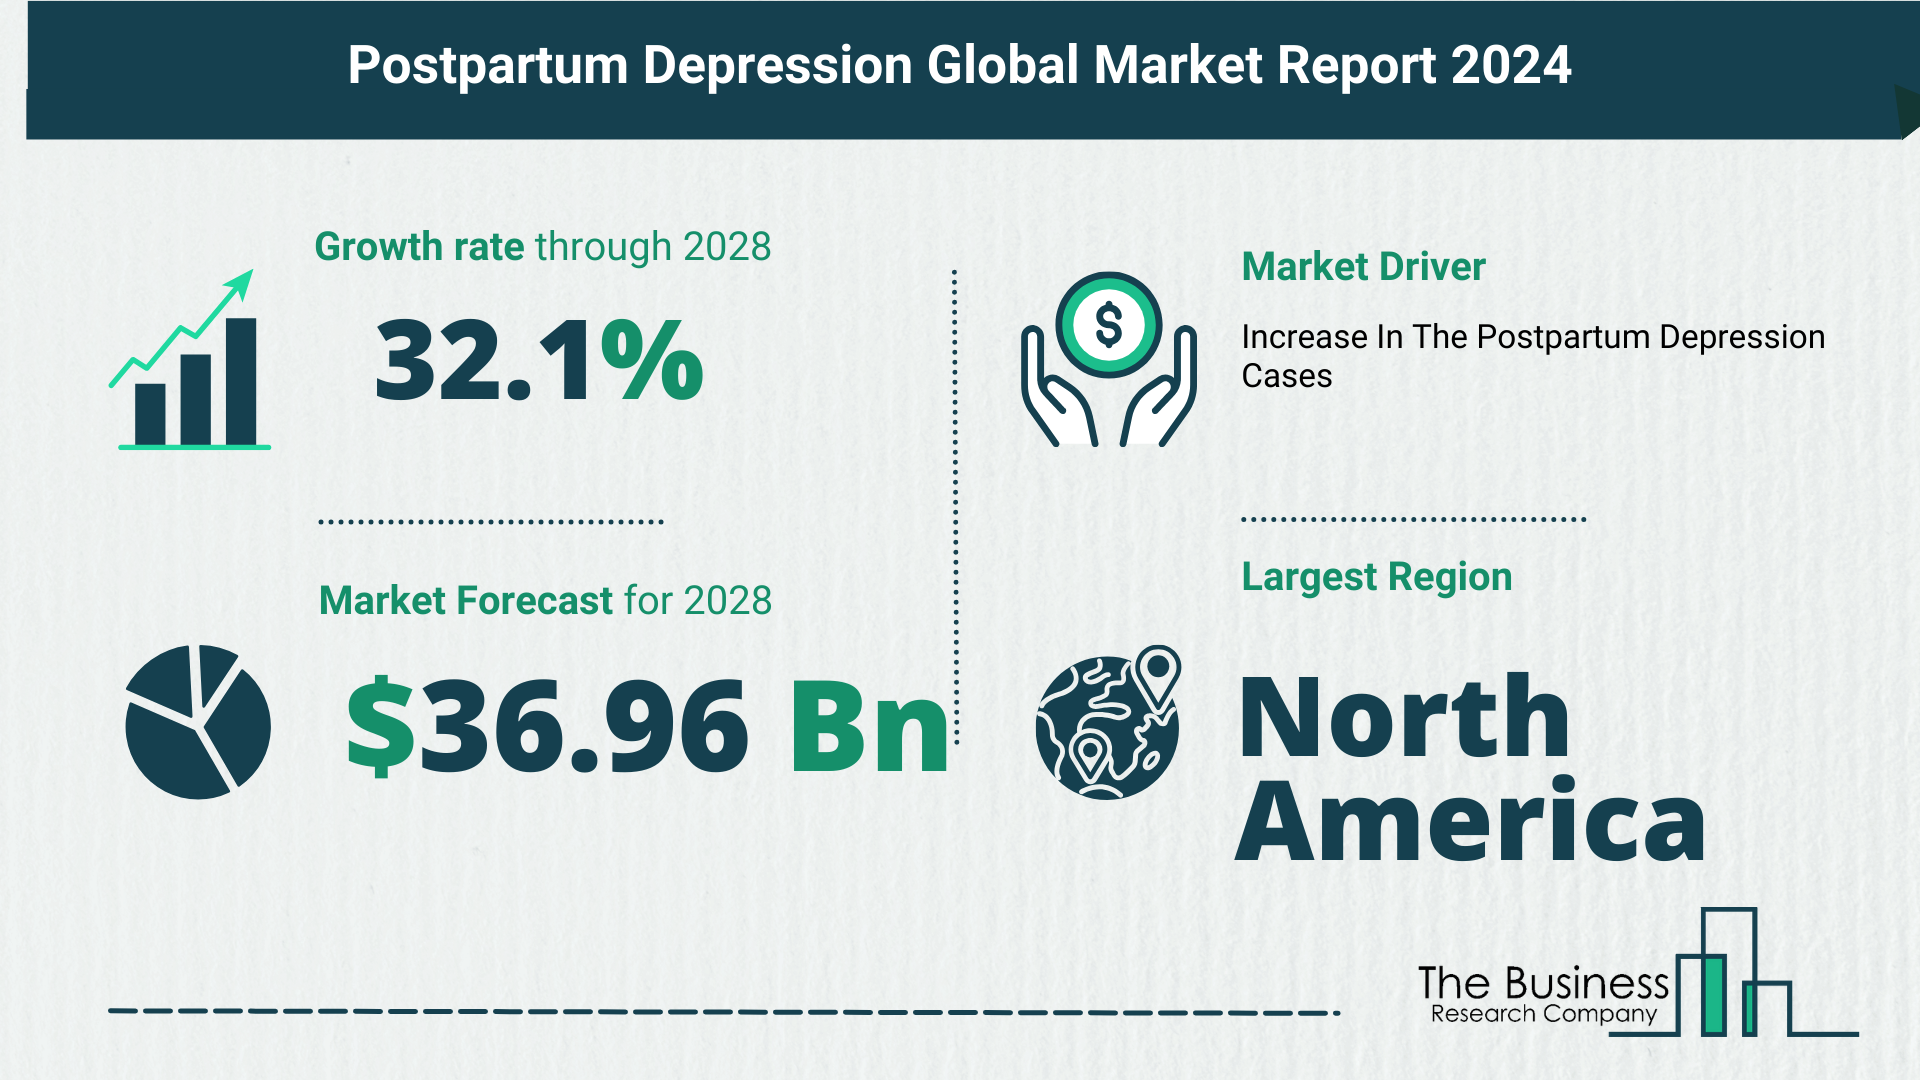 Global Postpartum Depression Market